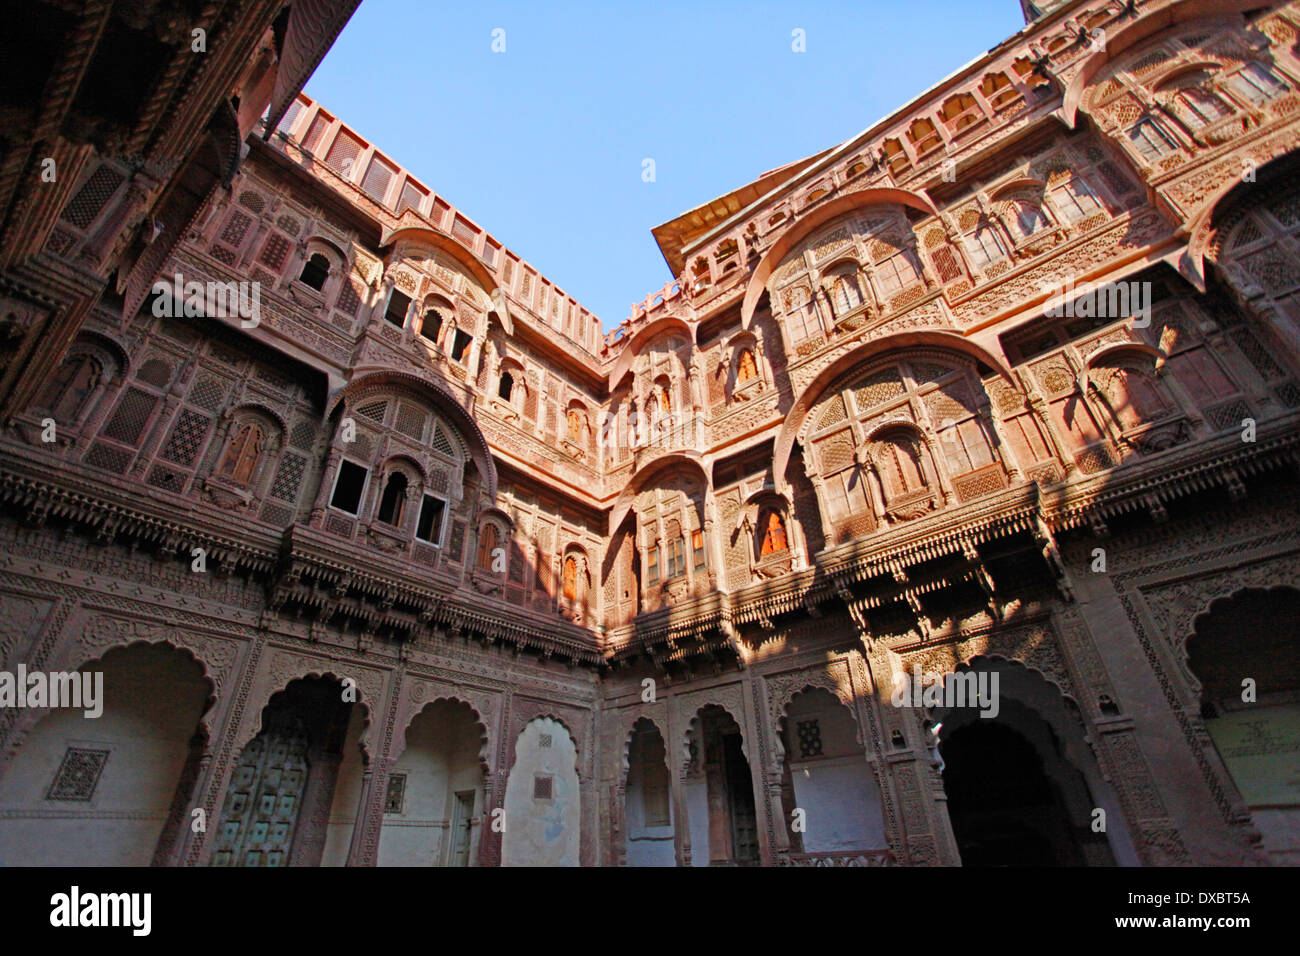 Die Einrichtung der "ehrangarh fort". Jodhpur, Rajasthan, Indien. Stockfoto